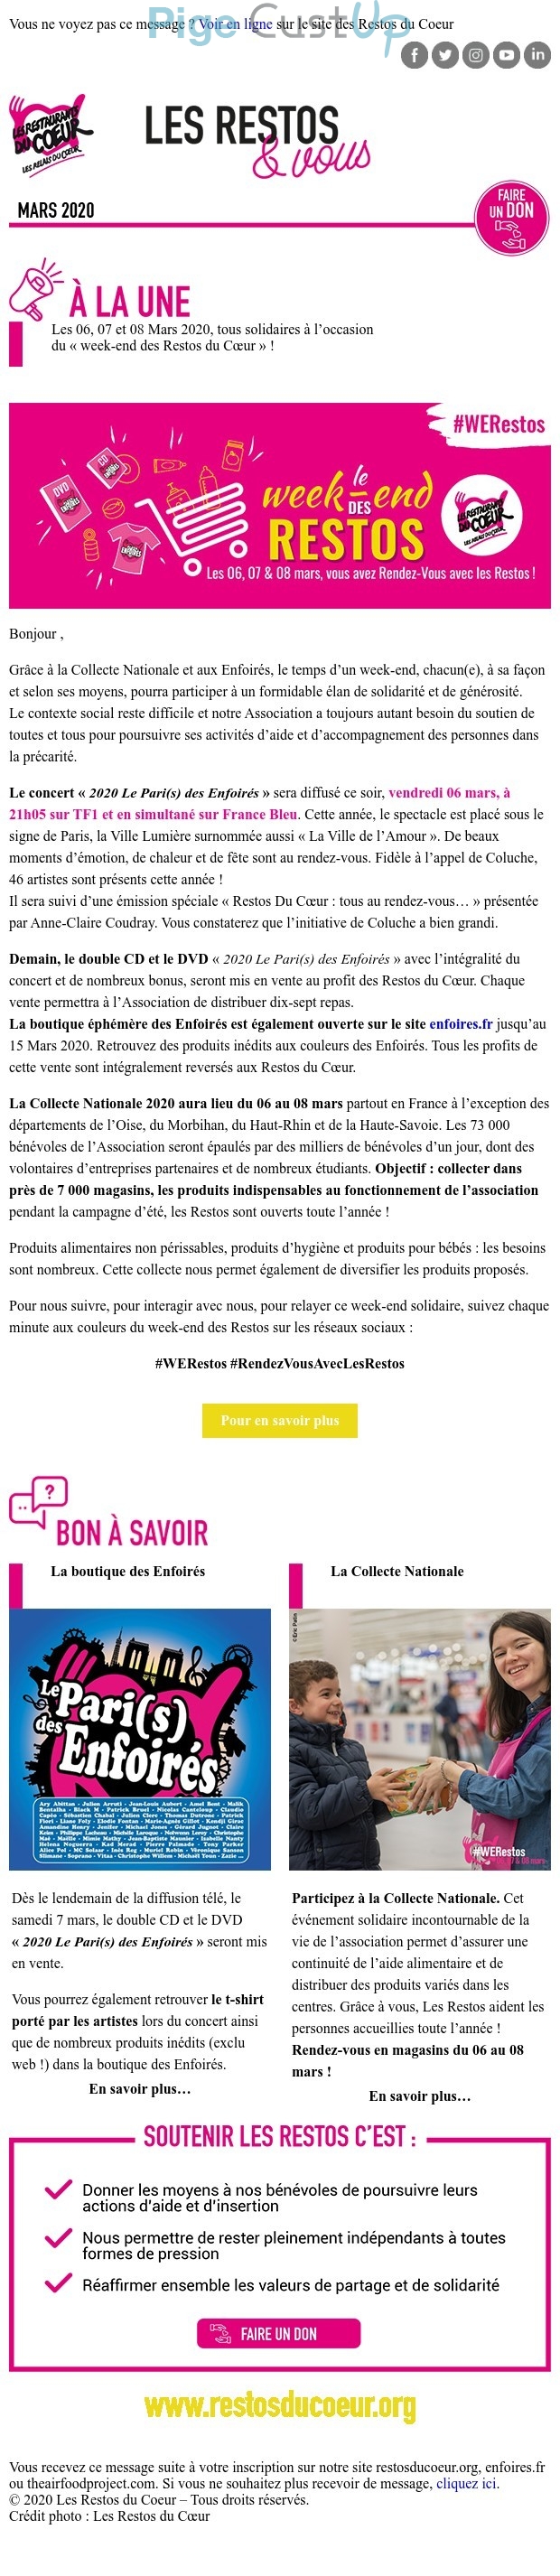 Exemple de Type de media  e-mailing - Les Restos du coeur - Marketing Acquisition - Collecte de dons - Marketing relationnel - Evénement - Newsletter